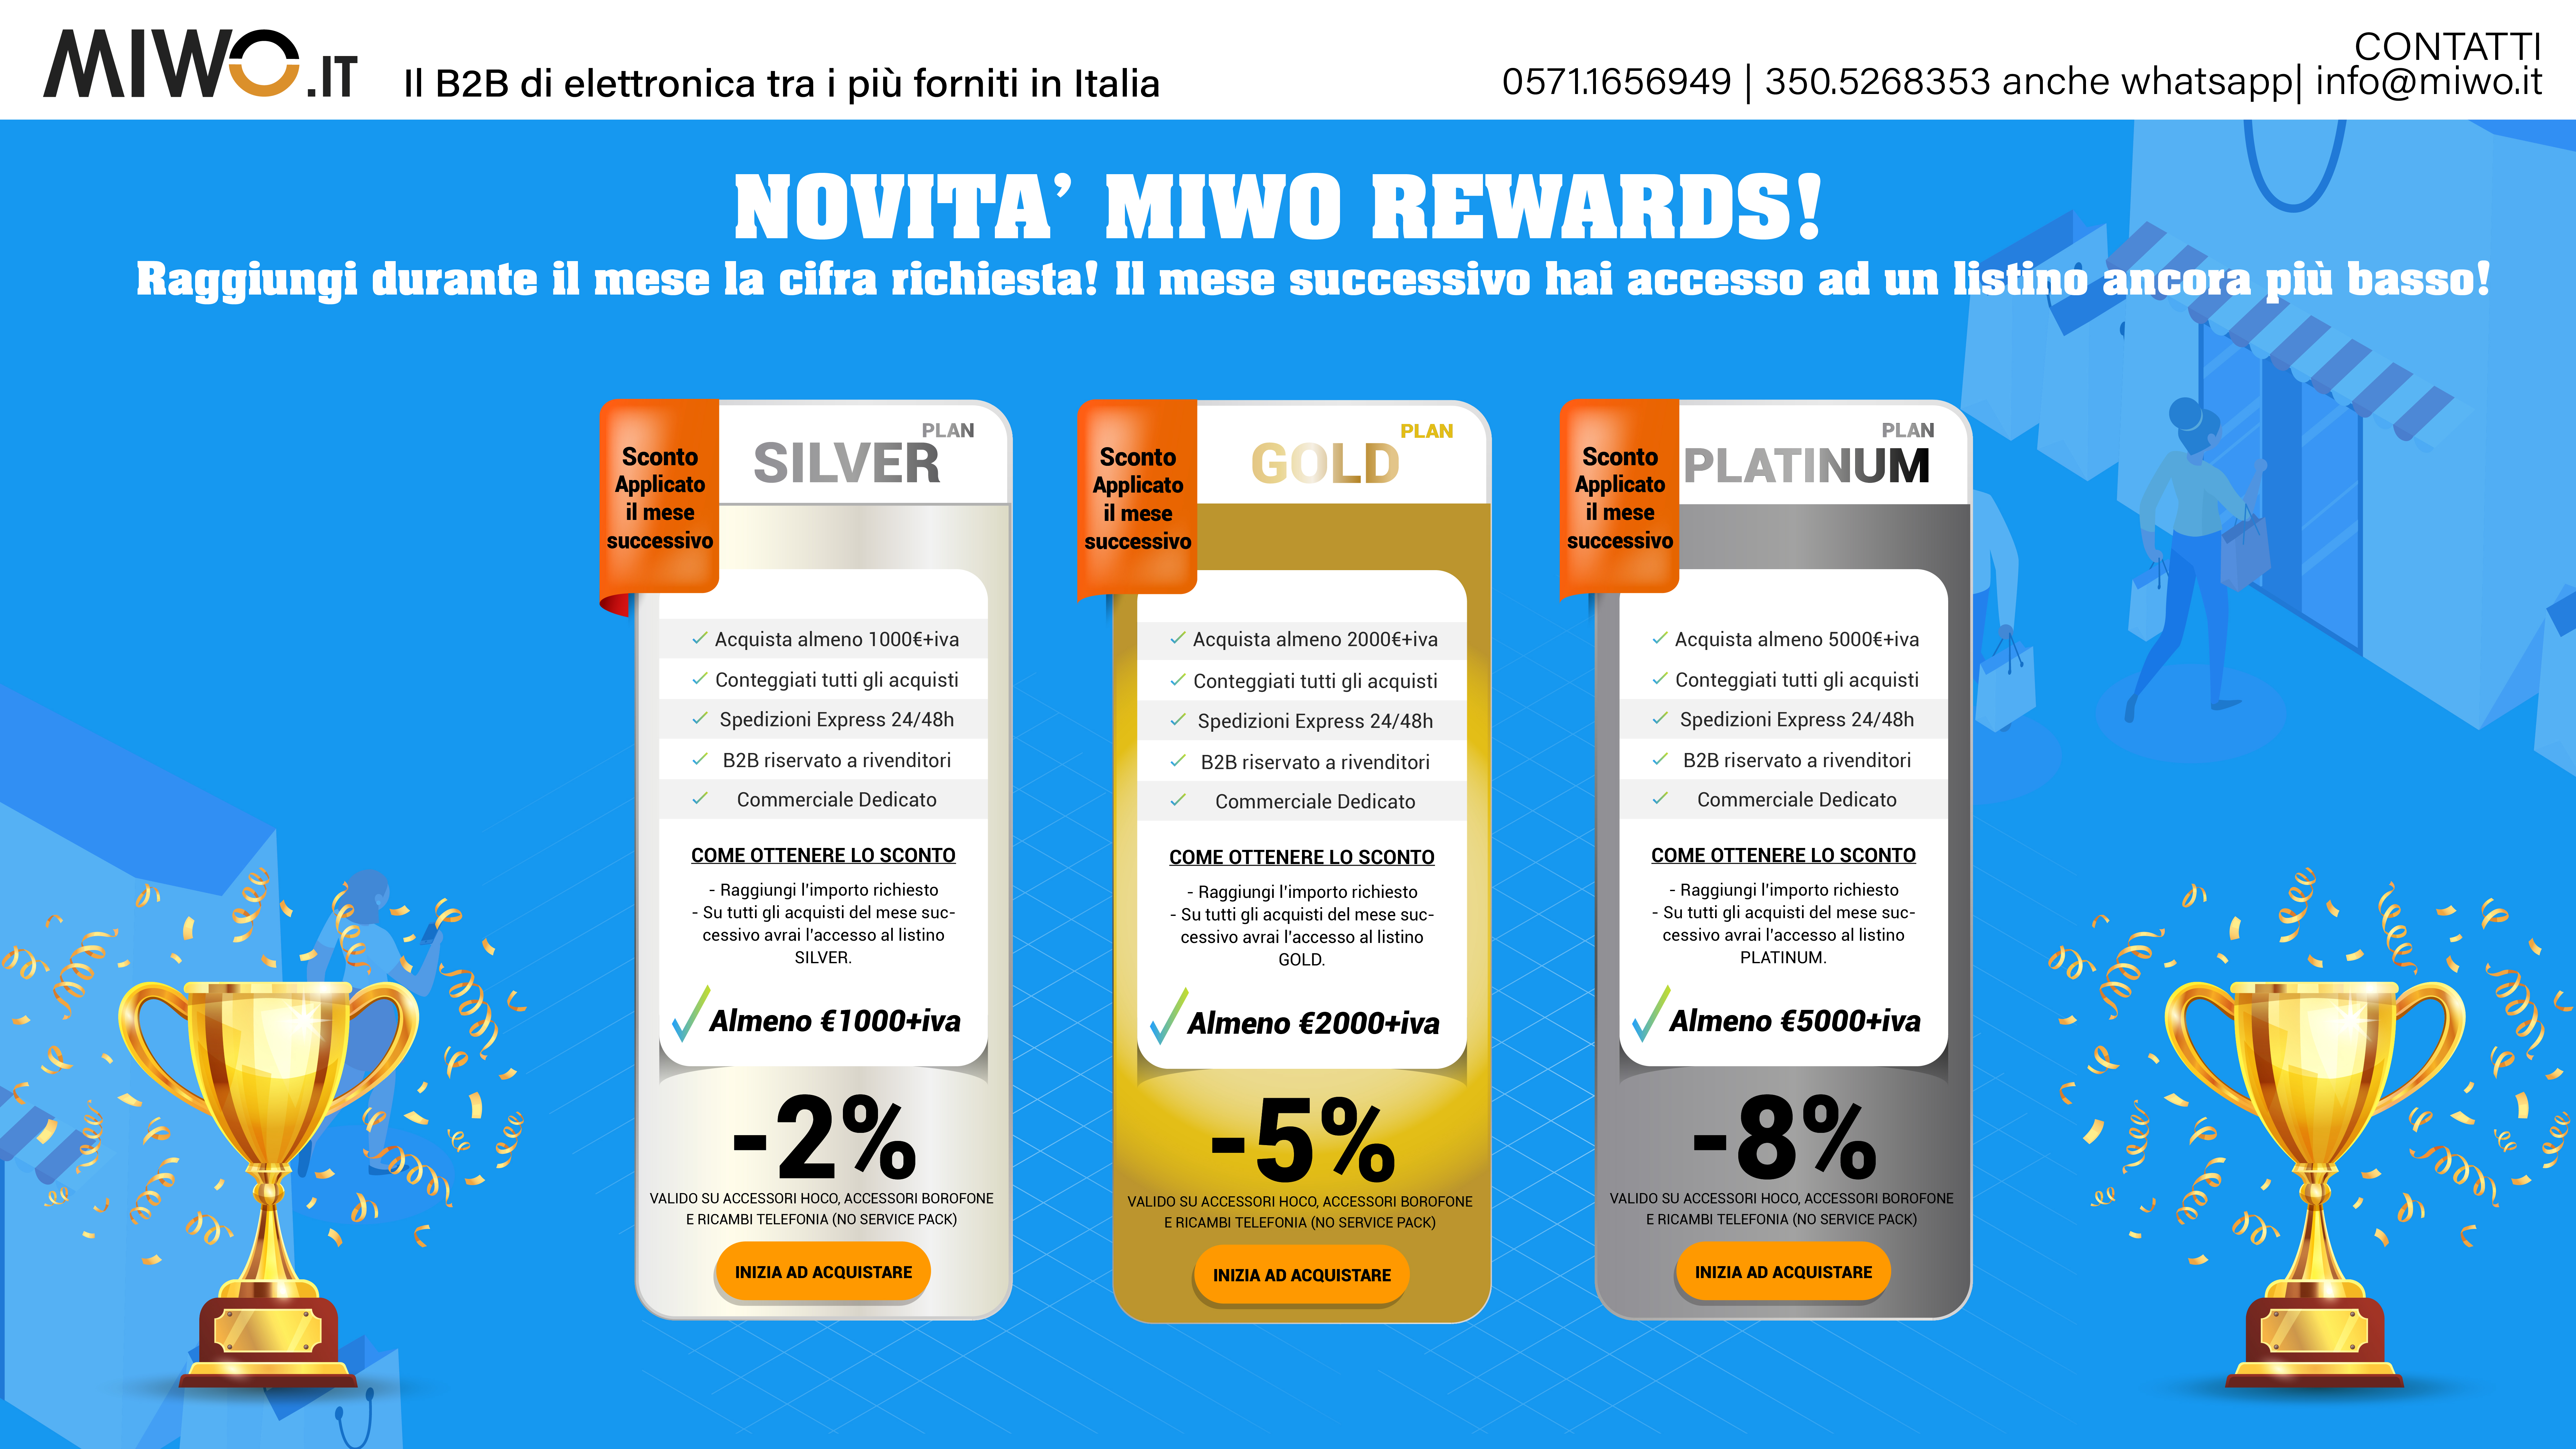 miwo rewards